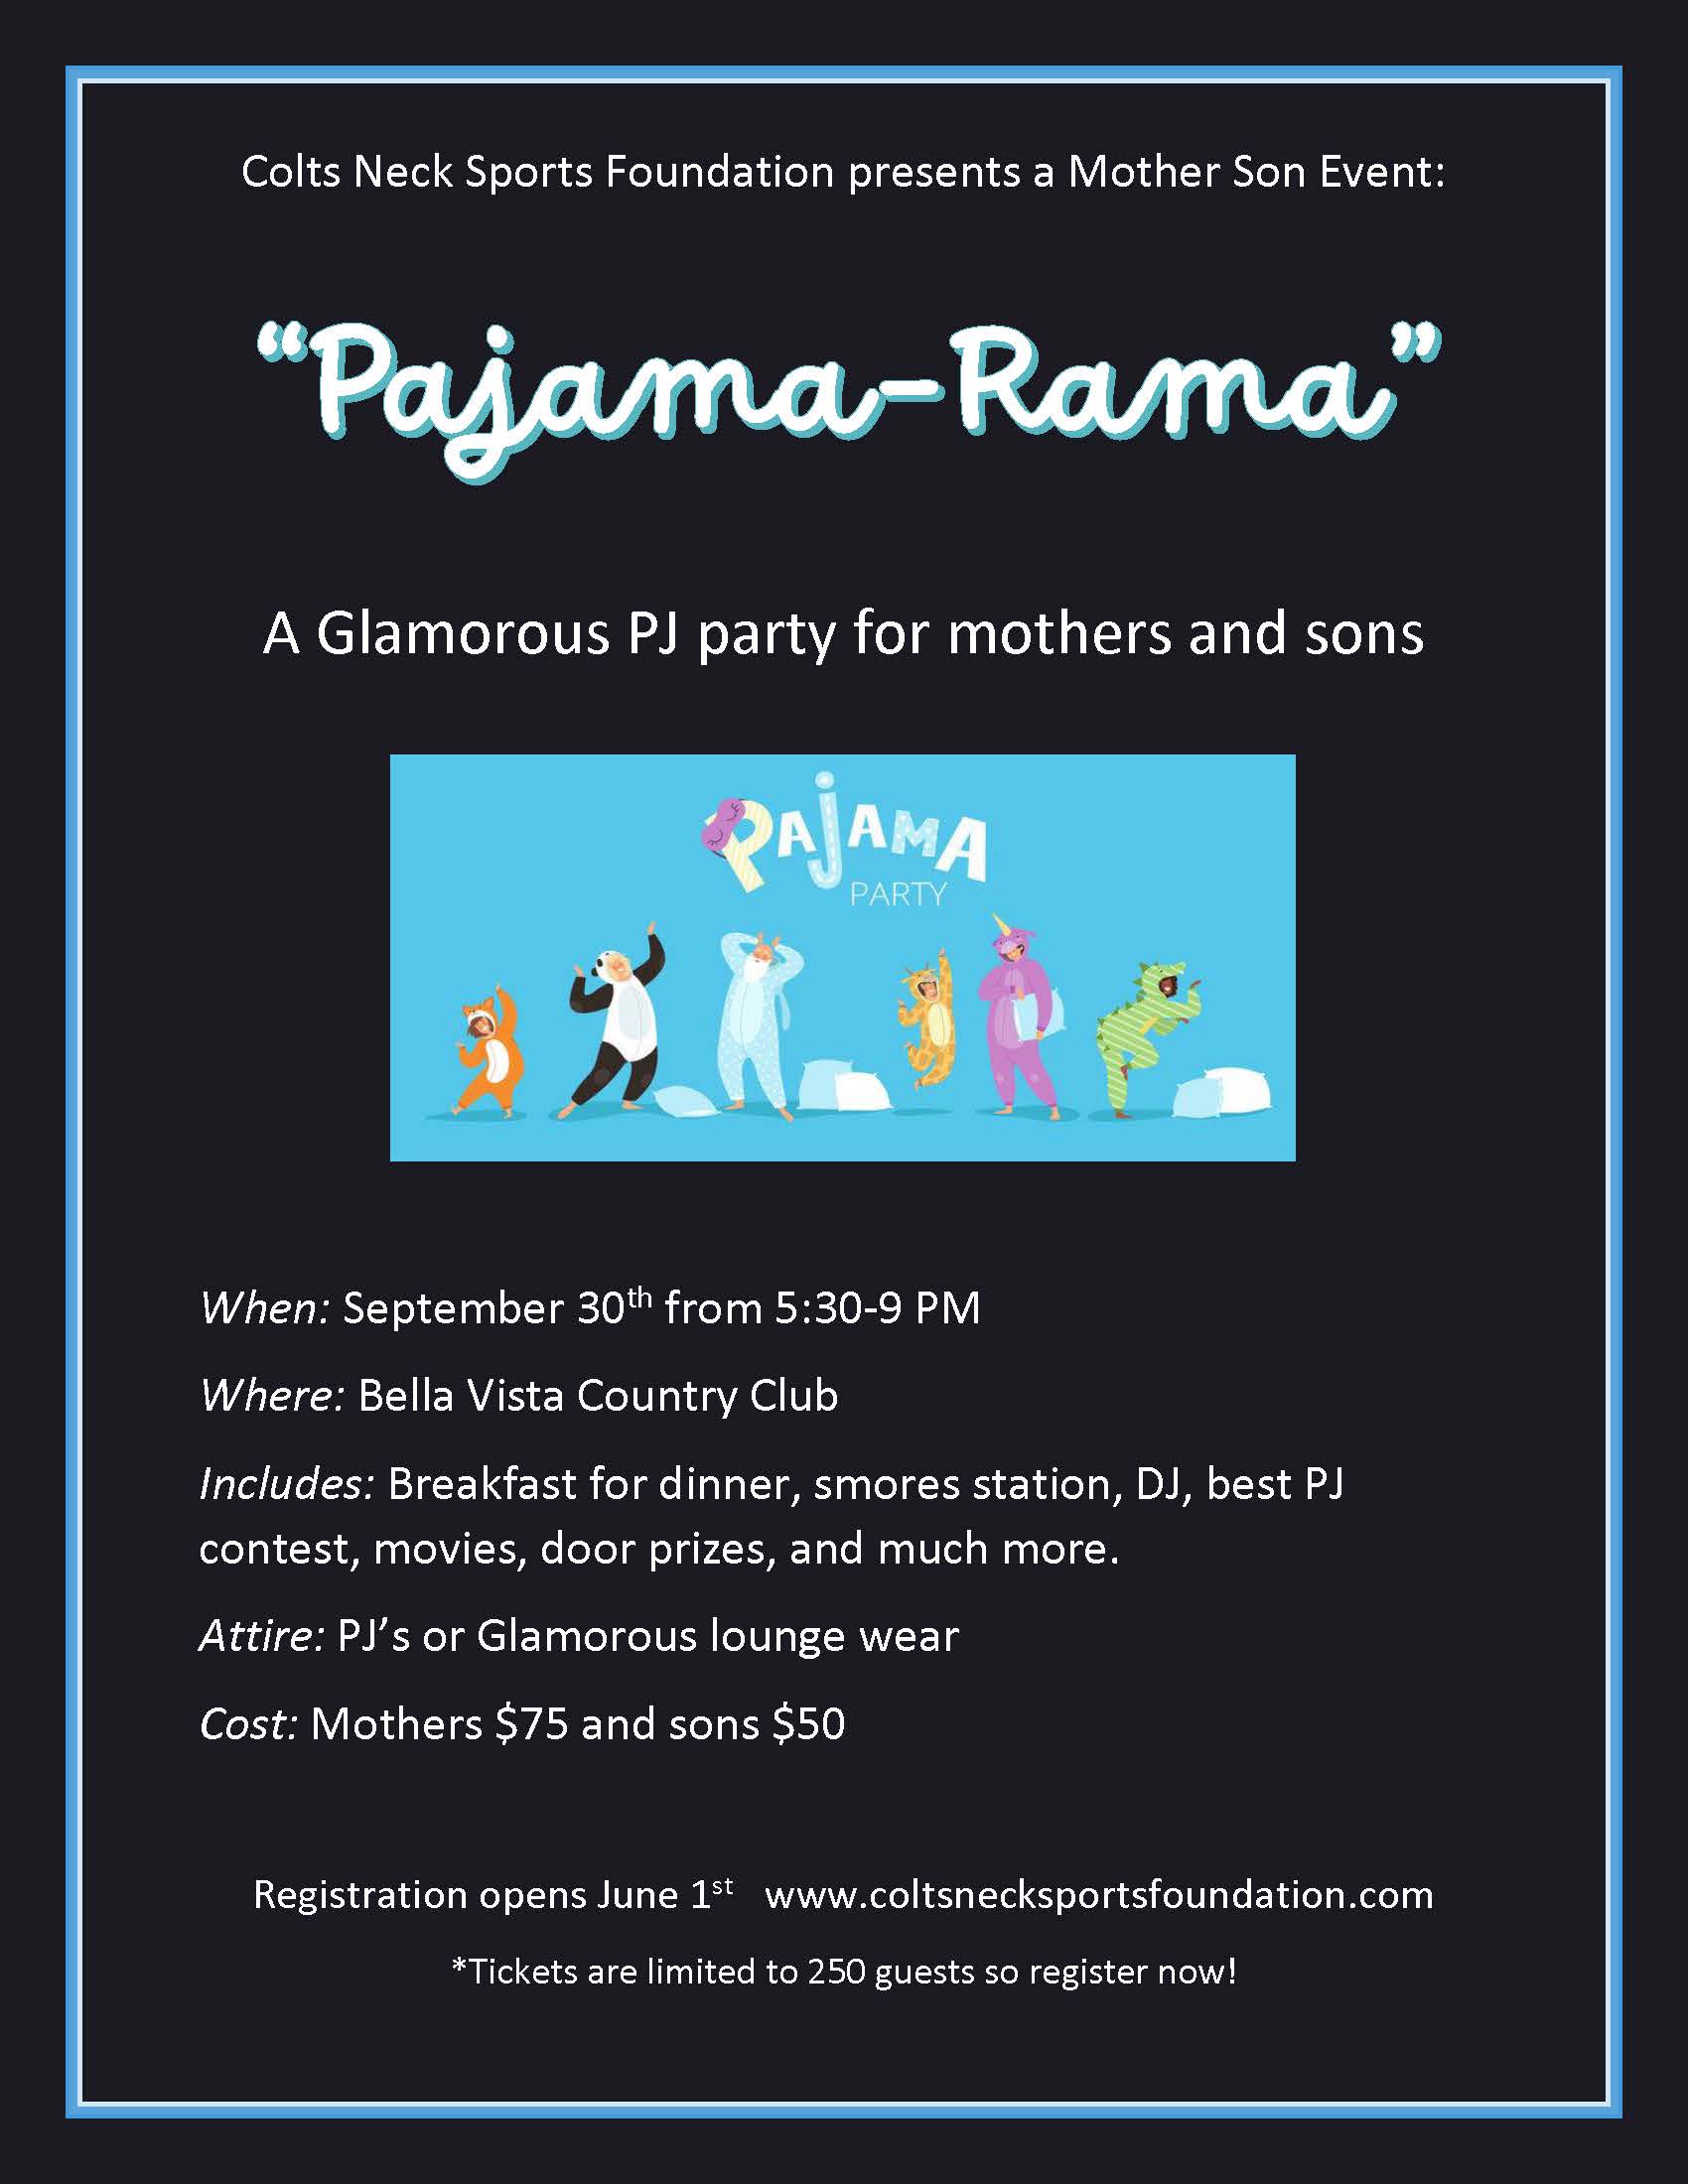 Pajama-Rama